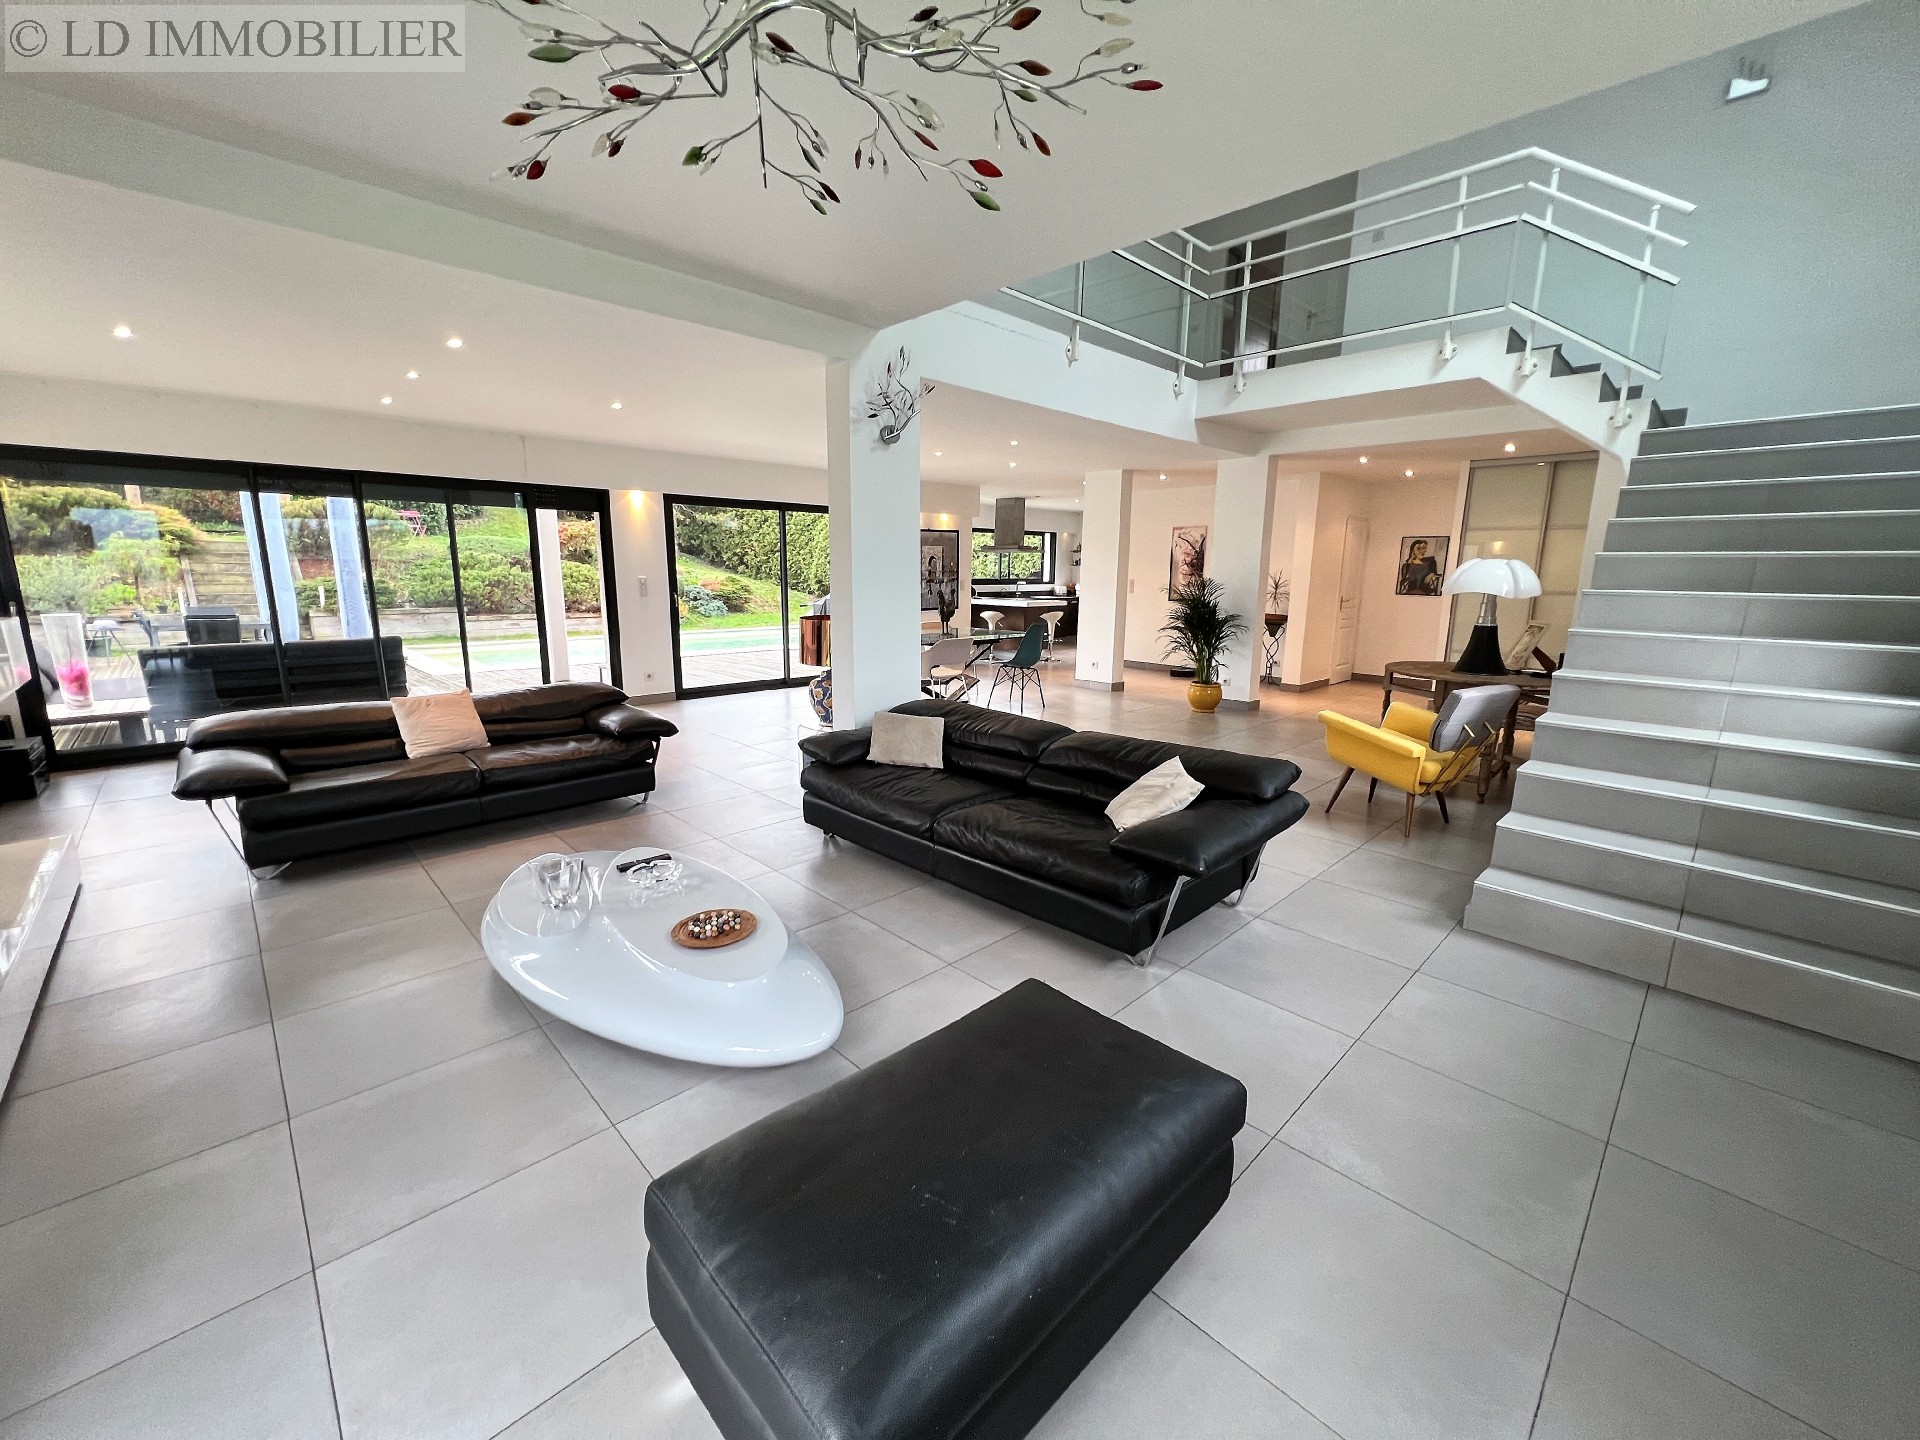 Vente maison  villa - CHALLES LES EAUX 230 m², 6 pièces